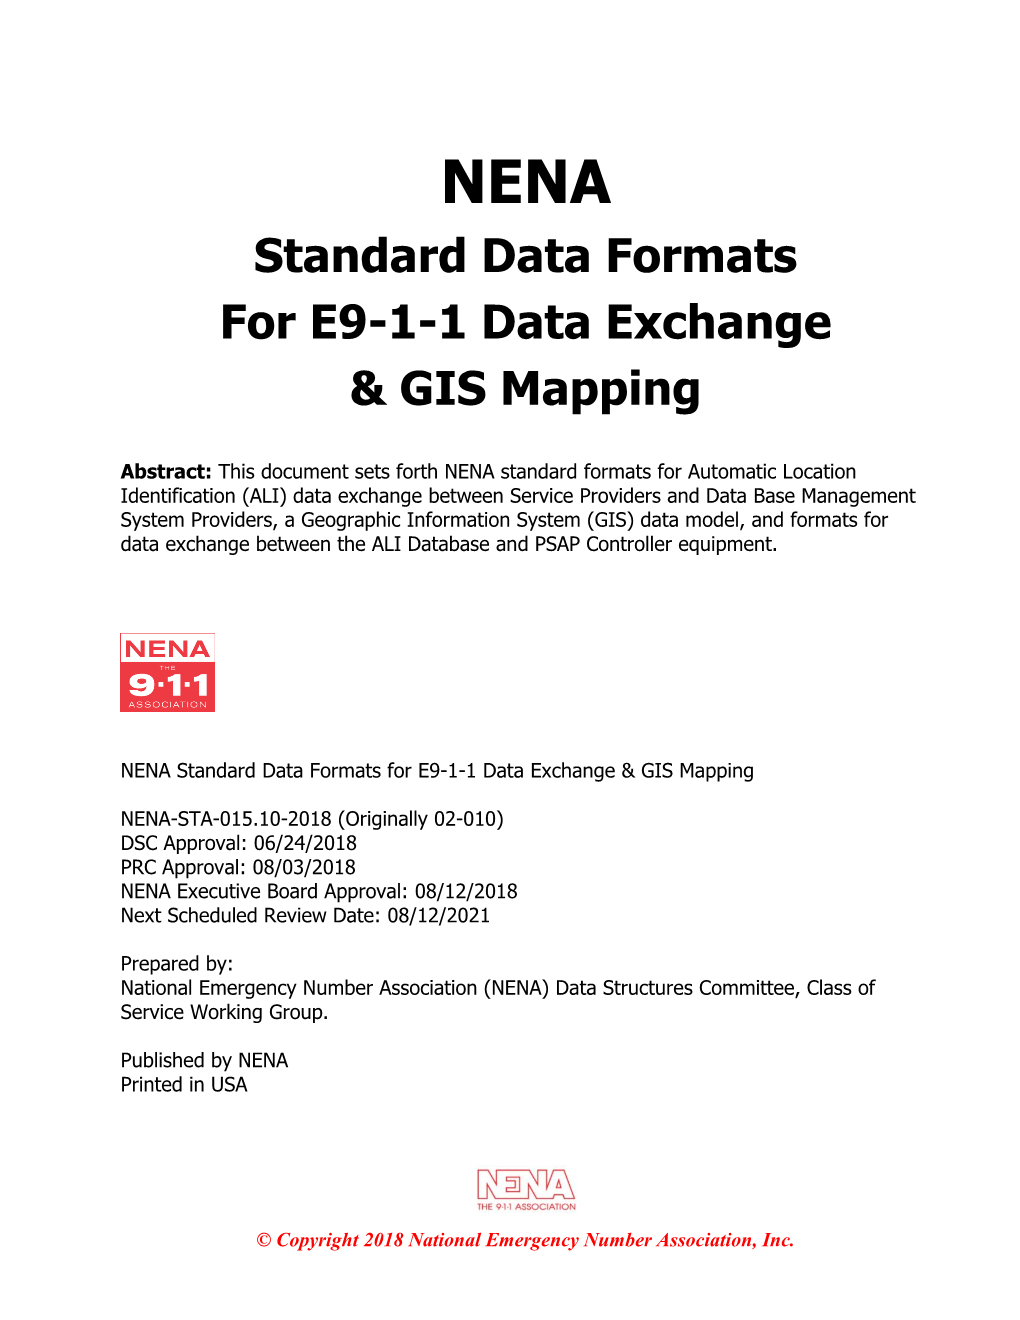 NENA Standard Data Formats for E9-1-1 Data Exchange & GIS